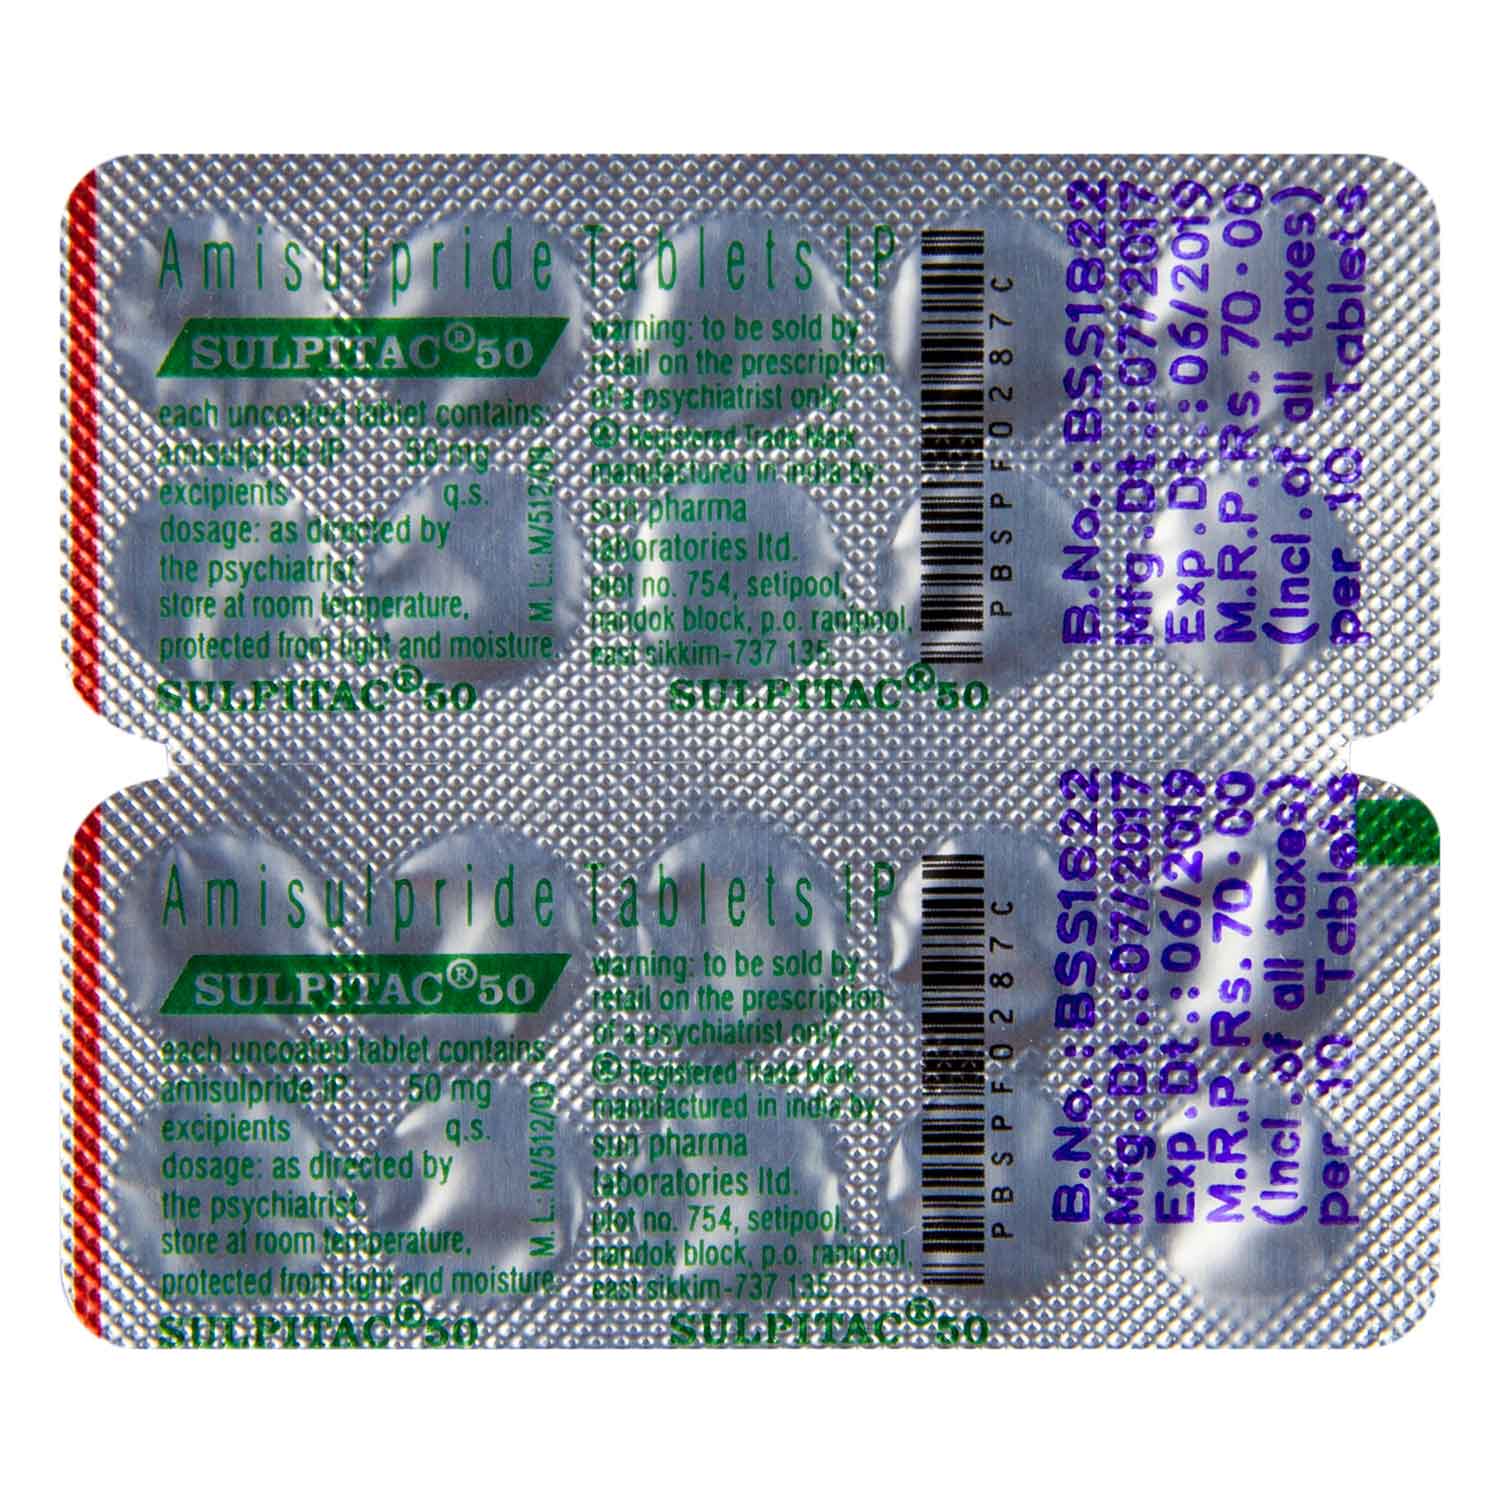 スルピタック50mg アミスルピリド 通販 統合失調症 効果 口コミ 副作用 用法用量 ユニドラ